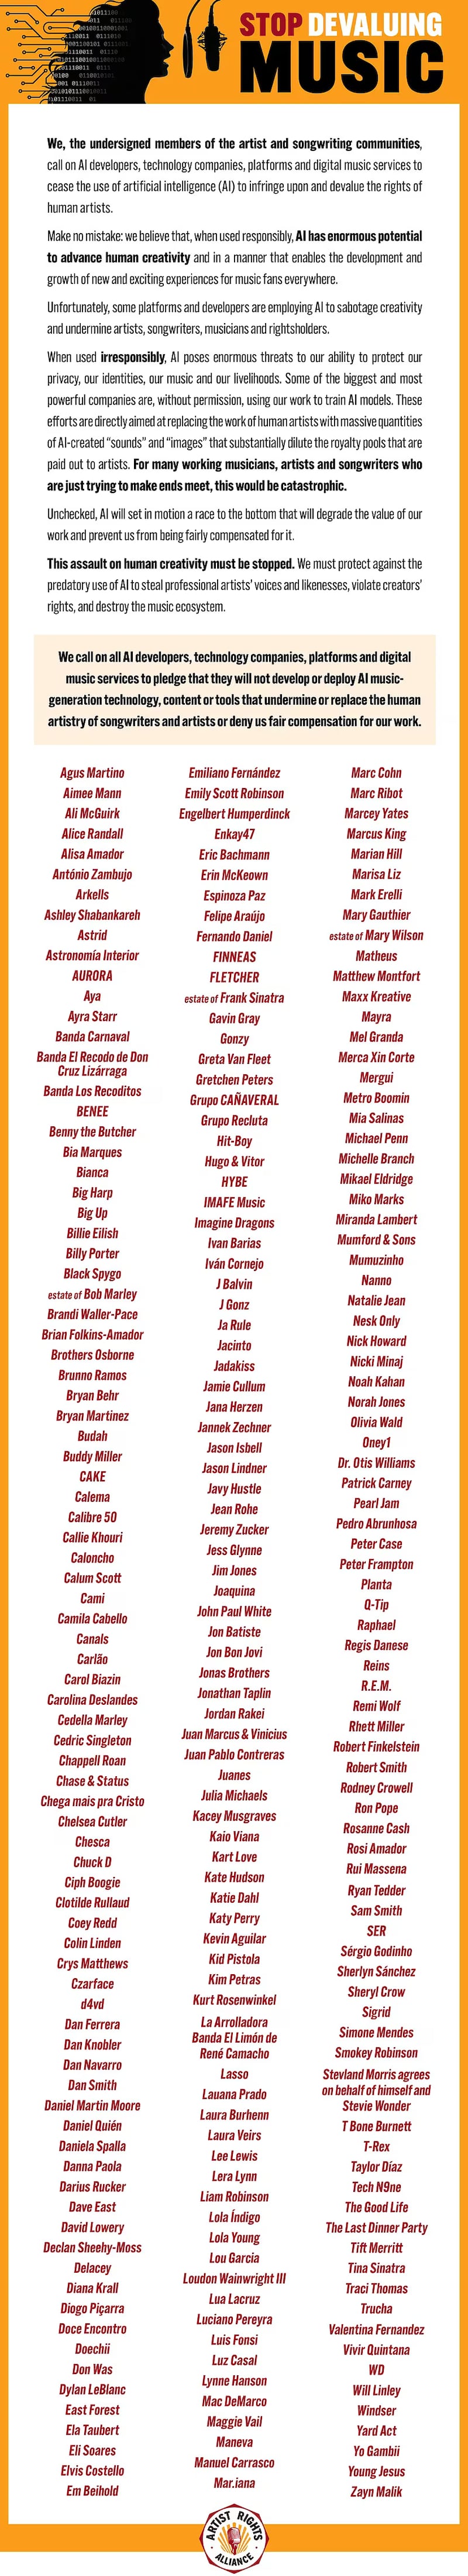 Más de 200 artistas,  entre ellos Billie Eilish, Juanes, Elvis Costello, Norah Jones, Sheryl Crow, Katy Perry, Pearl Jam y R.E.M., firman carta en contra del avance de la inteligencia artificial